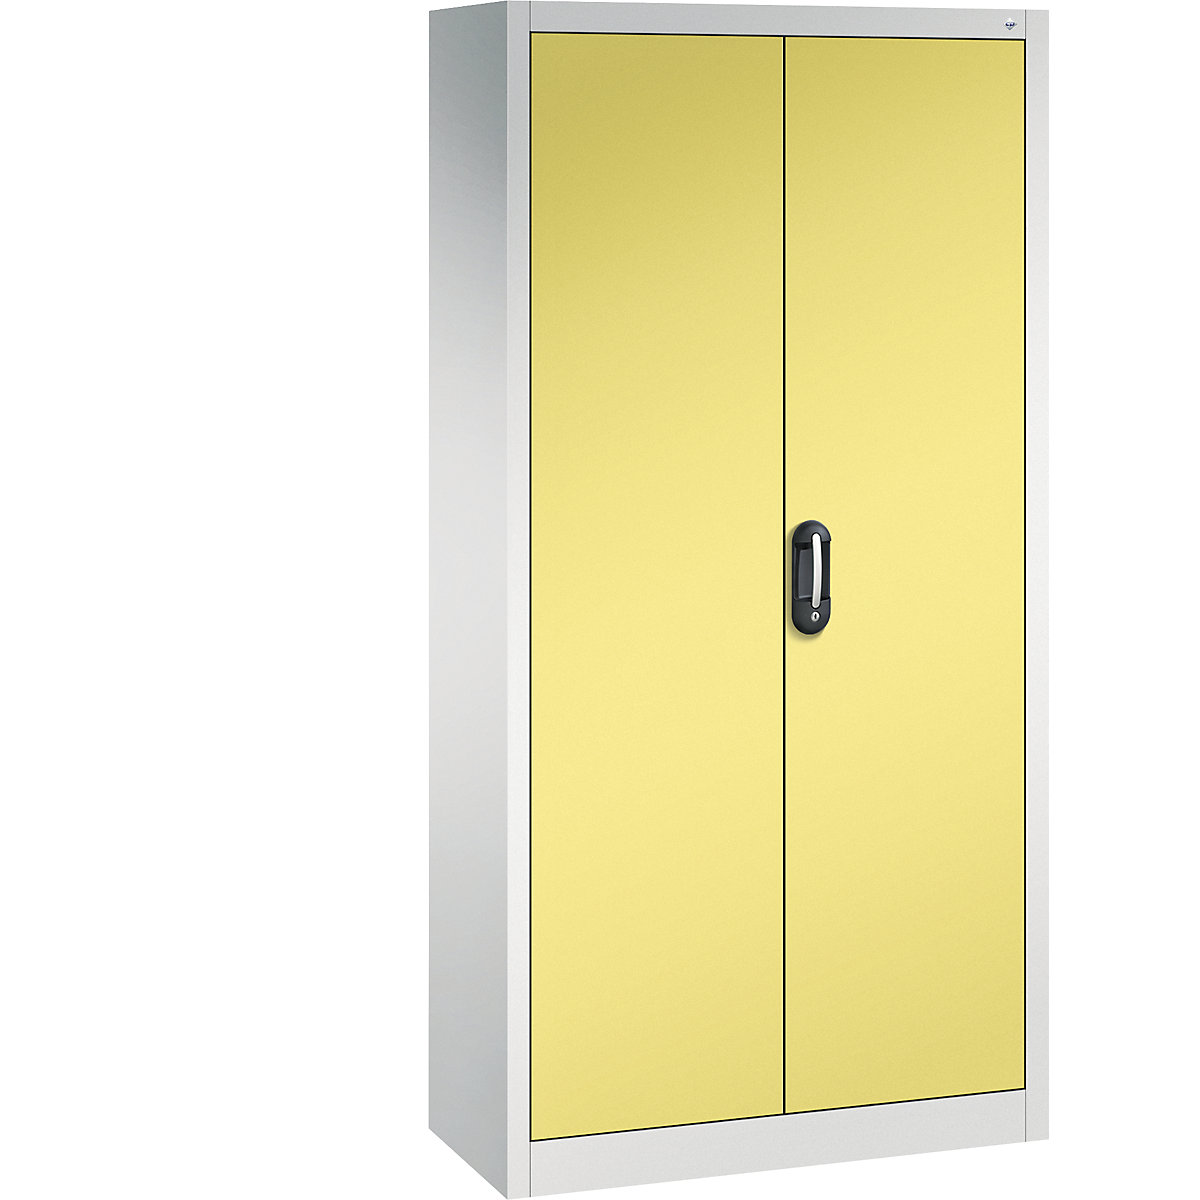 Univerzální skříň ACURADO – C+P, š x h 930 x 400 mm, světlá šedá / sírová žlutá-19